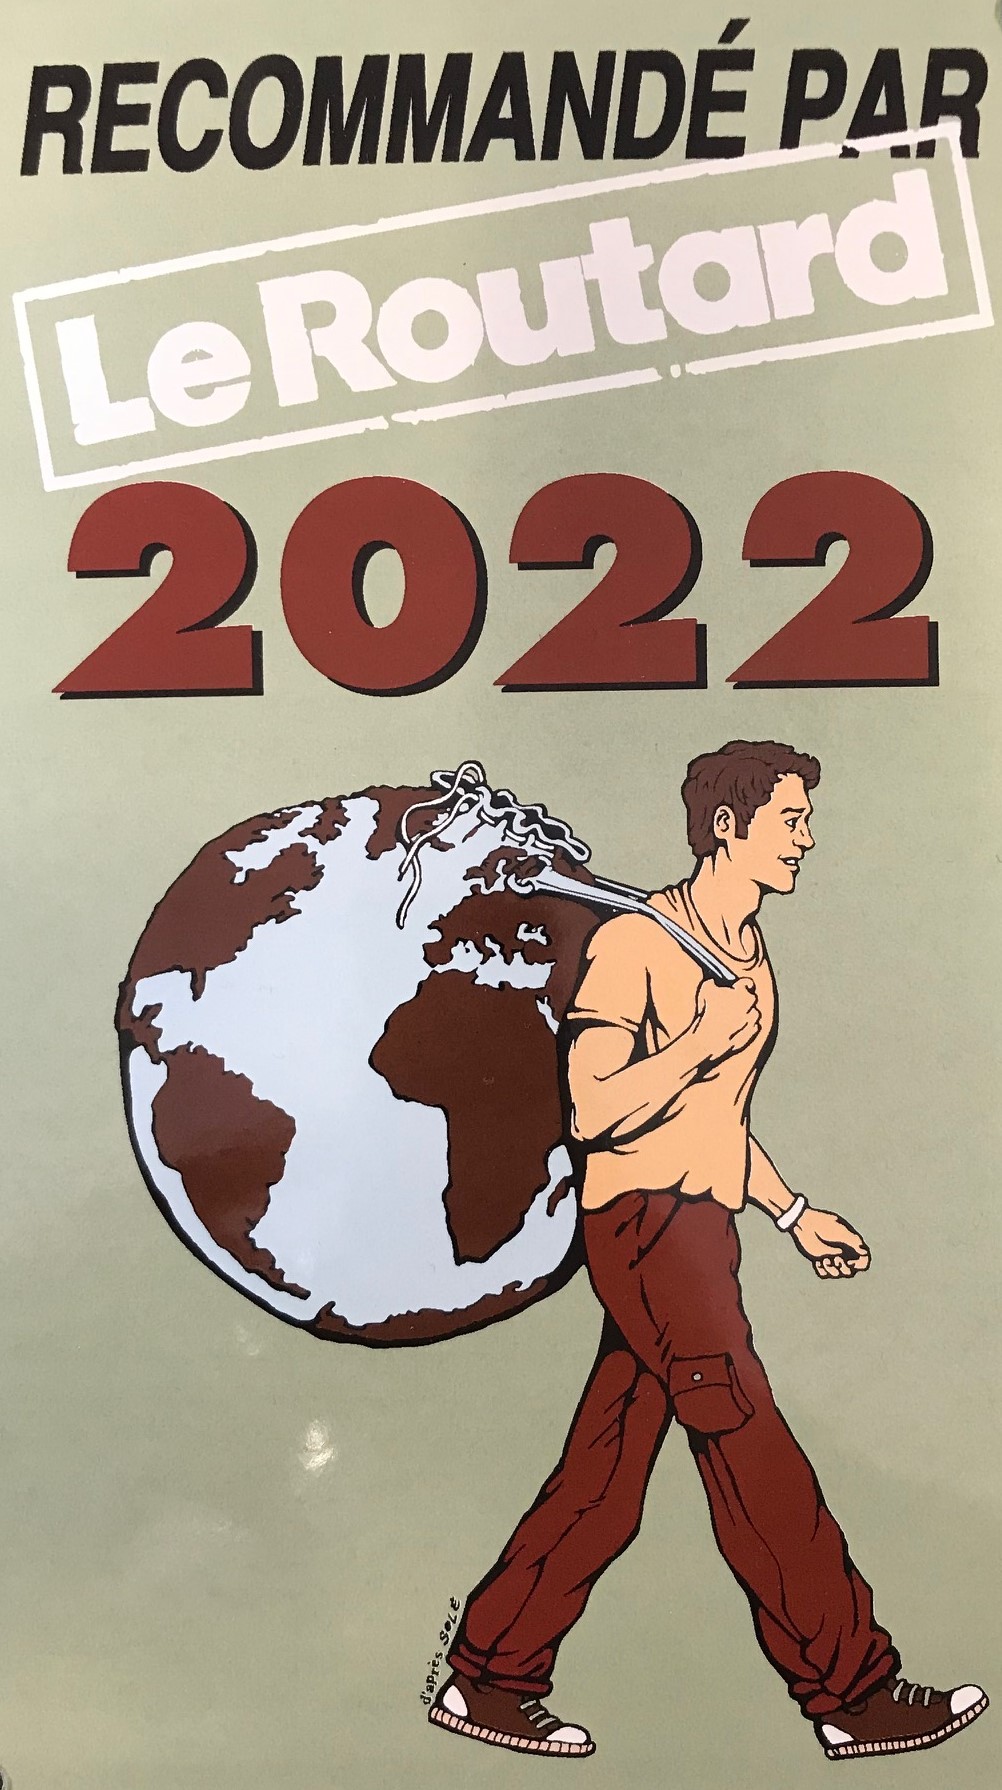 Recommandation par Le routard 2022